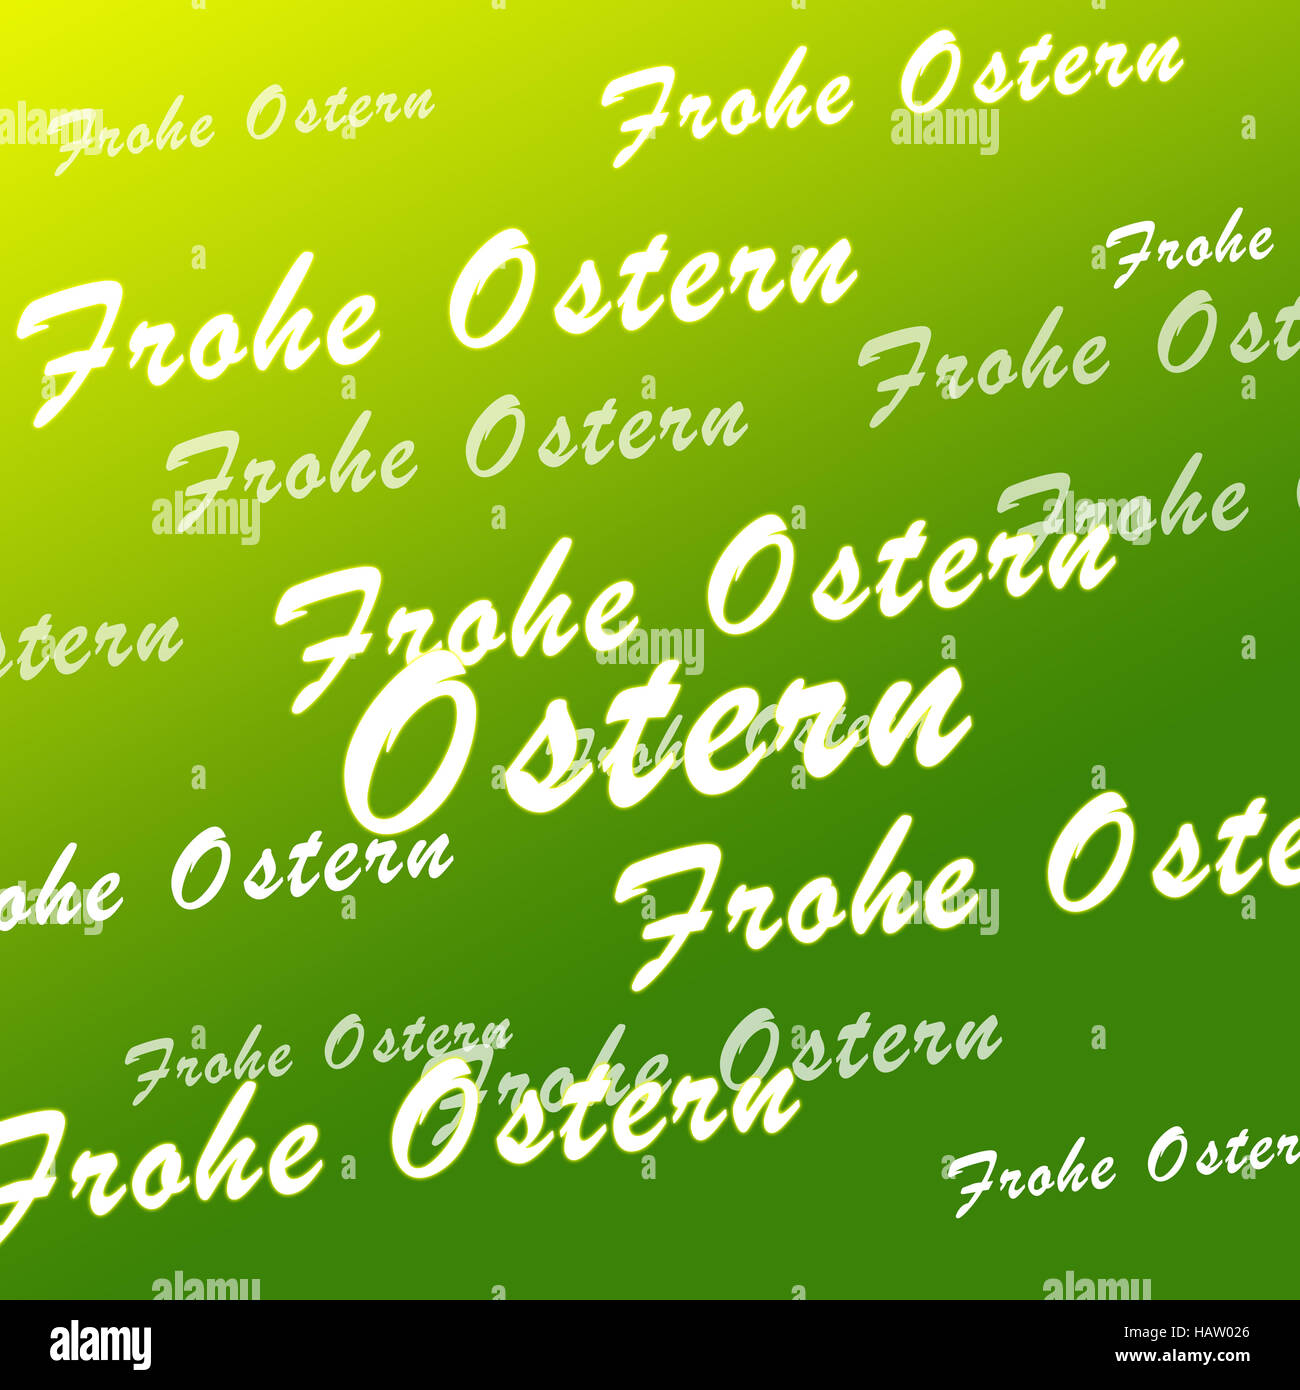 Frohe Ostern grün Foto de stock